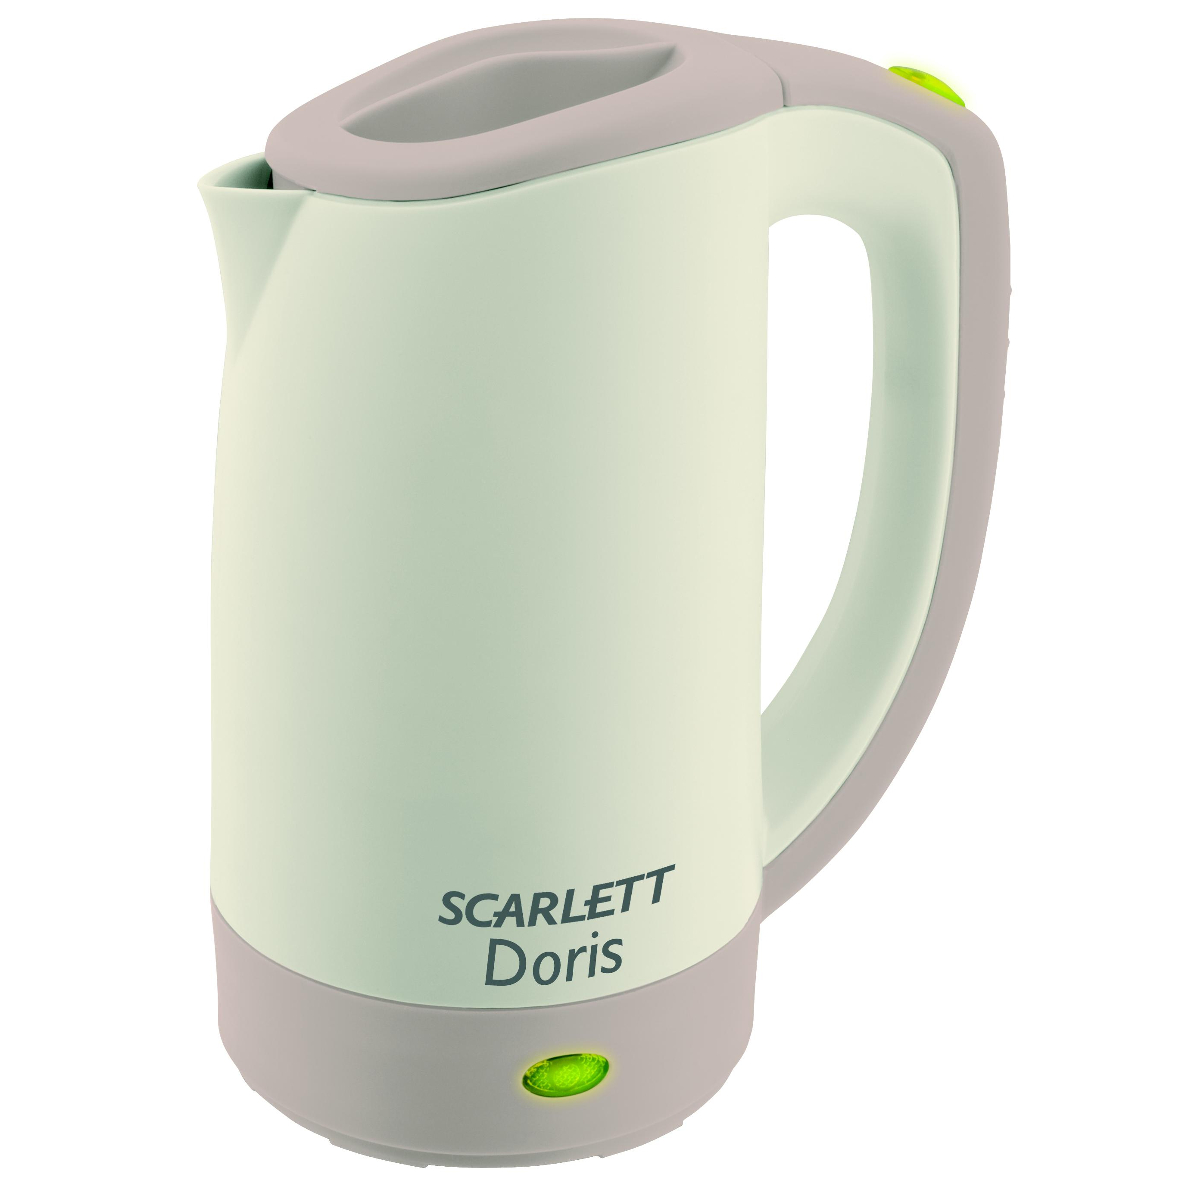 Электрические чайники Scarlett в Связном — купить электрочайники Скарлетт в интернет-магазине